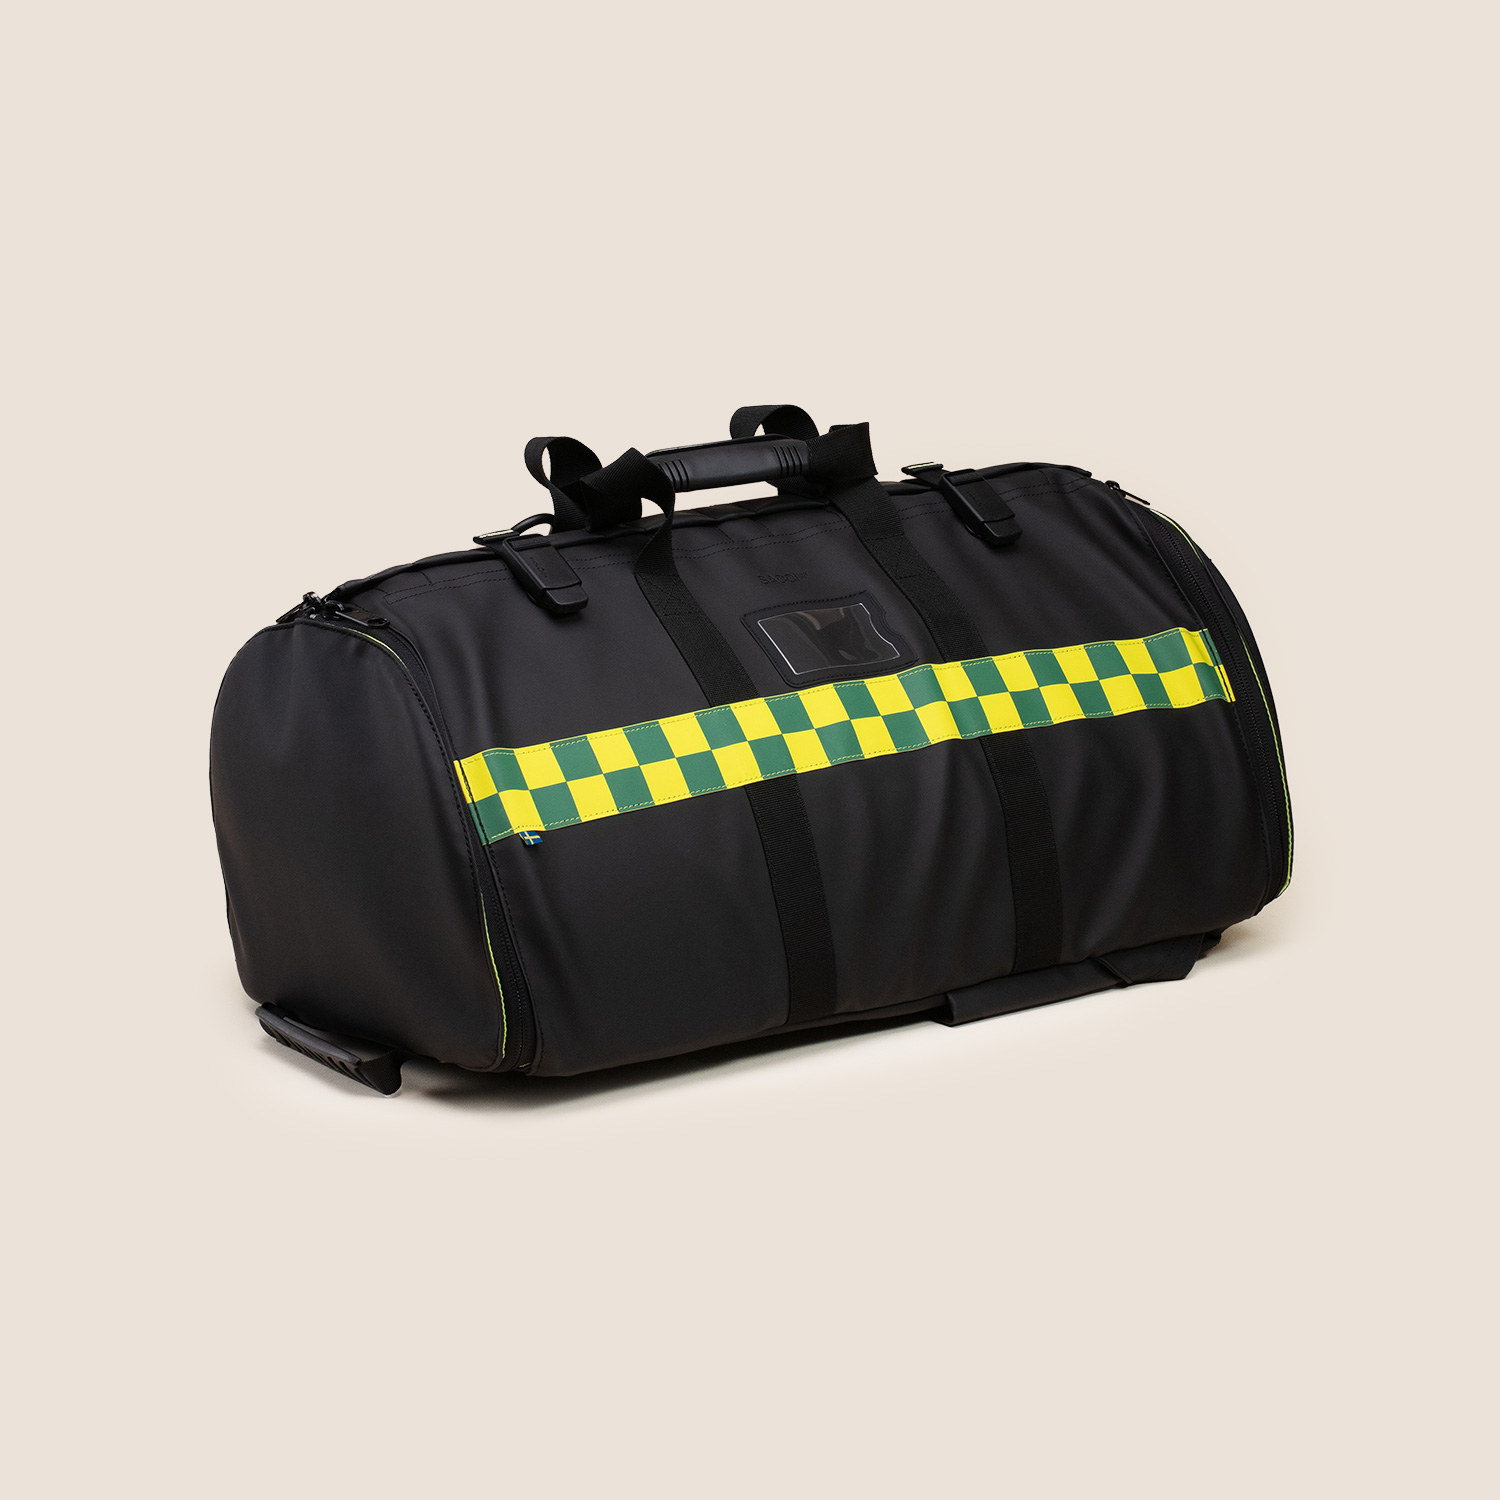 O2 LIGHT Rapid Bag syrgasväska för andningshjälp Medical bag